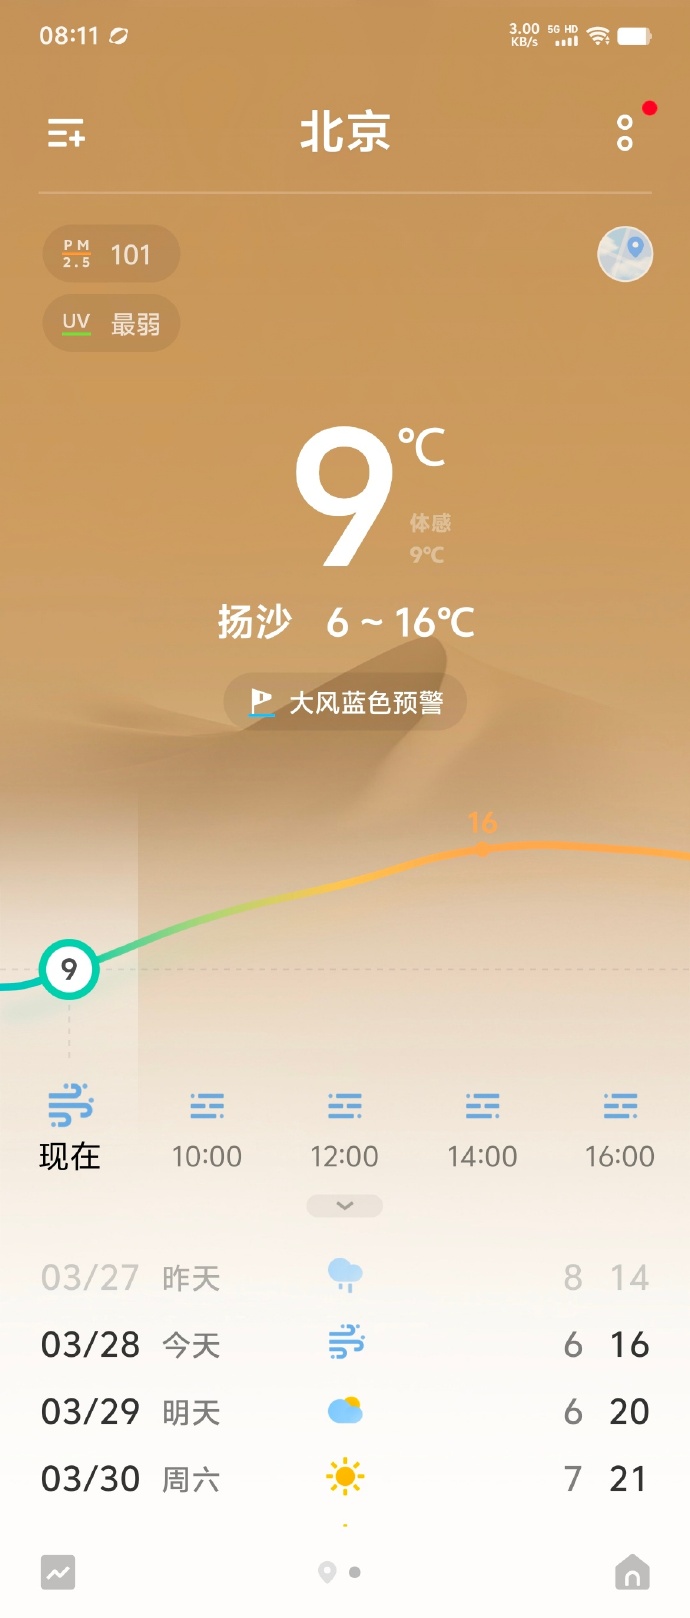 北京今日天气属严重污染。